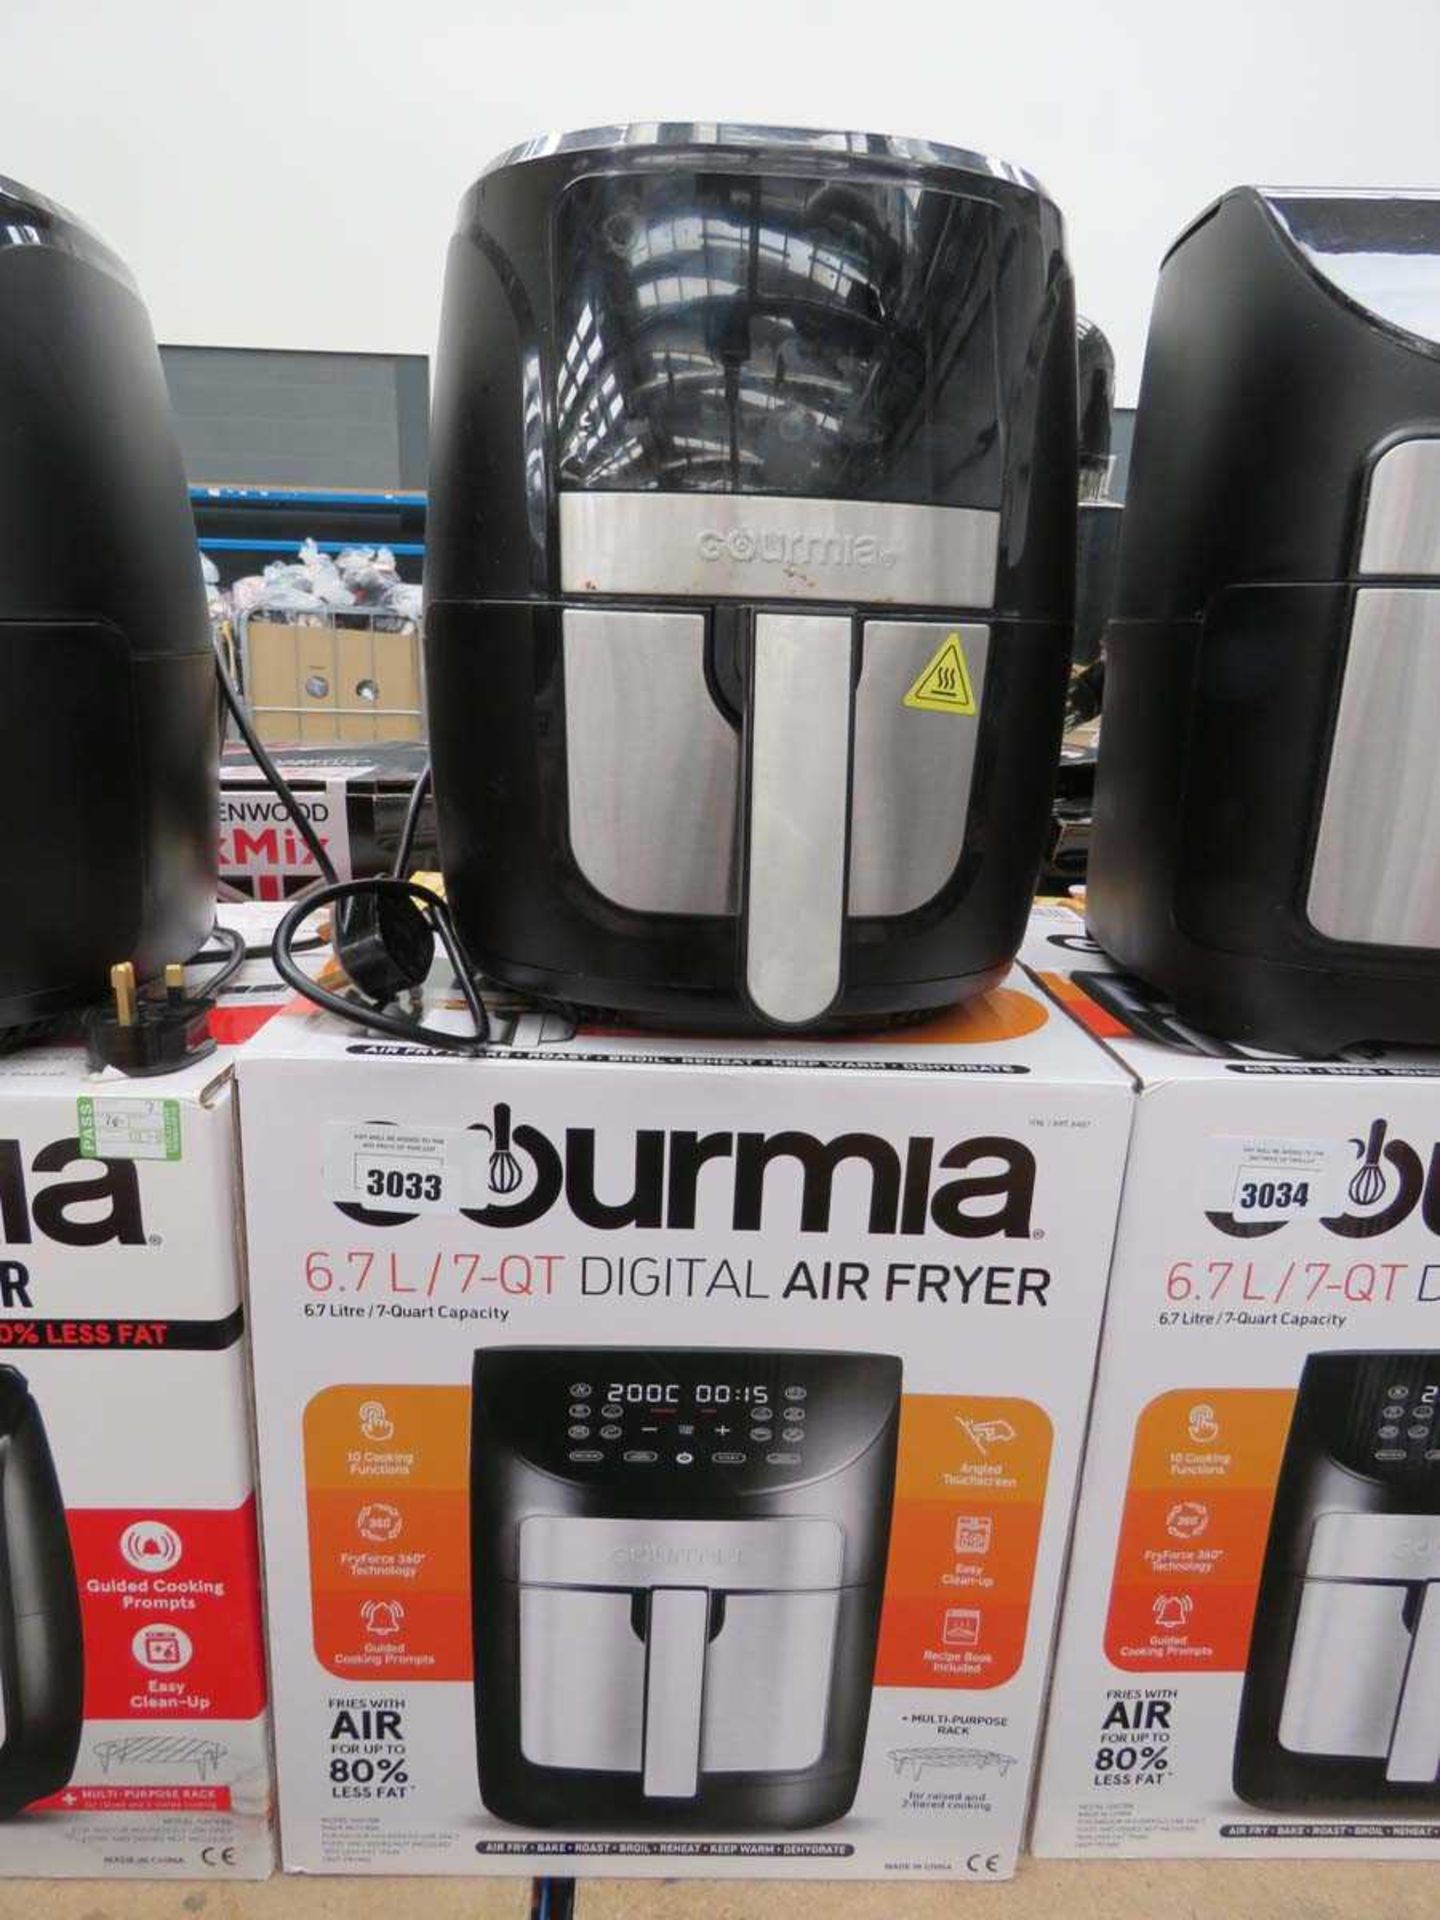 +VAT Gourmia digital air fryer (wrong box)